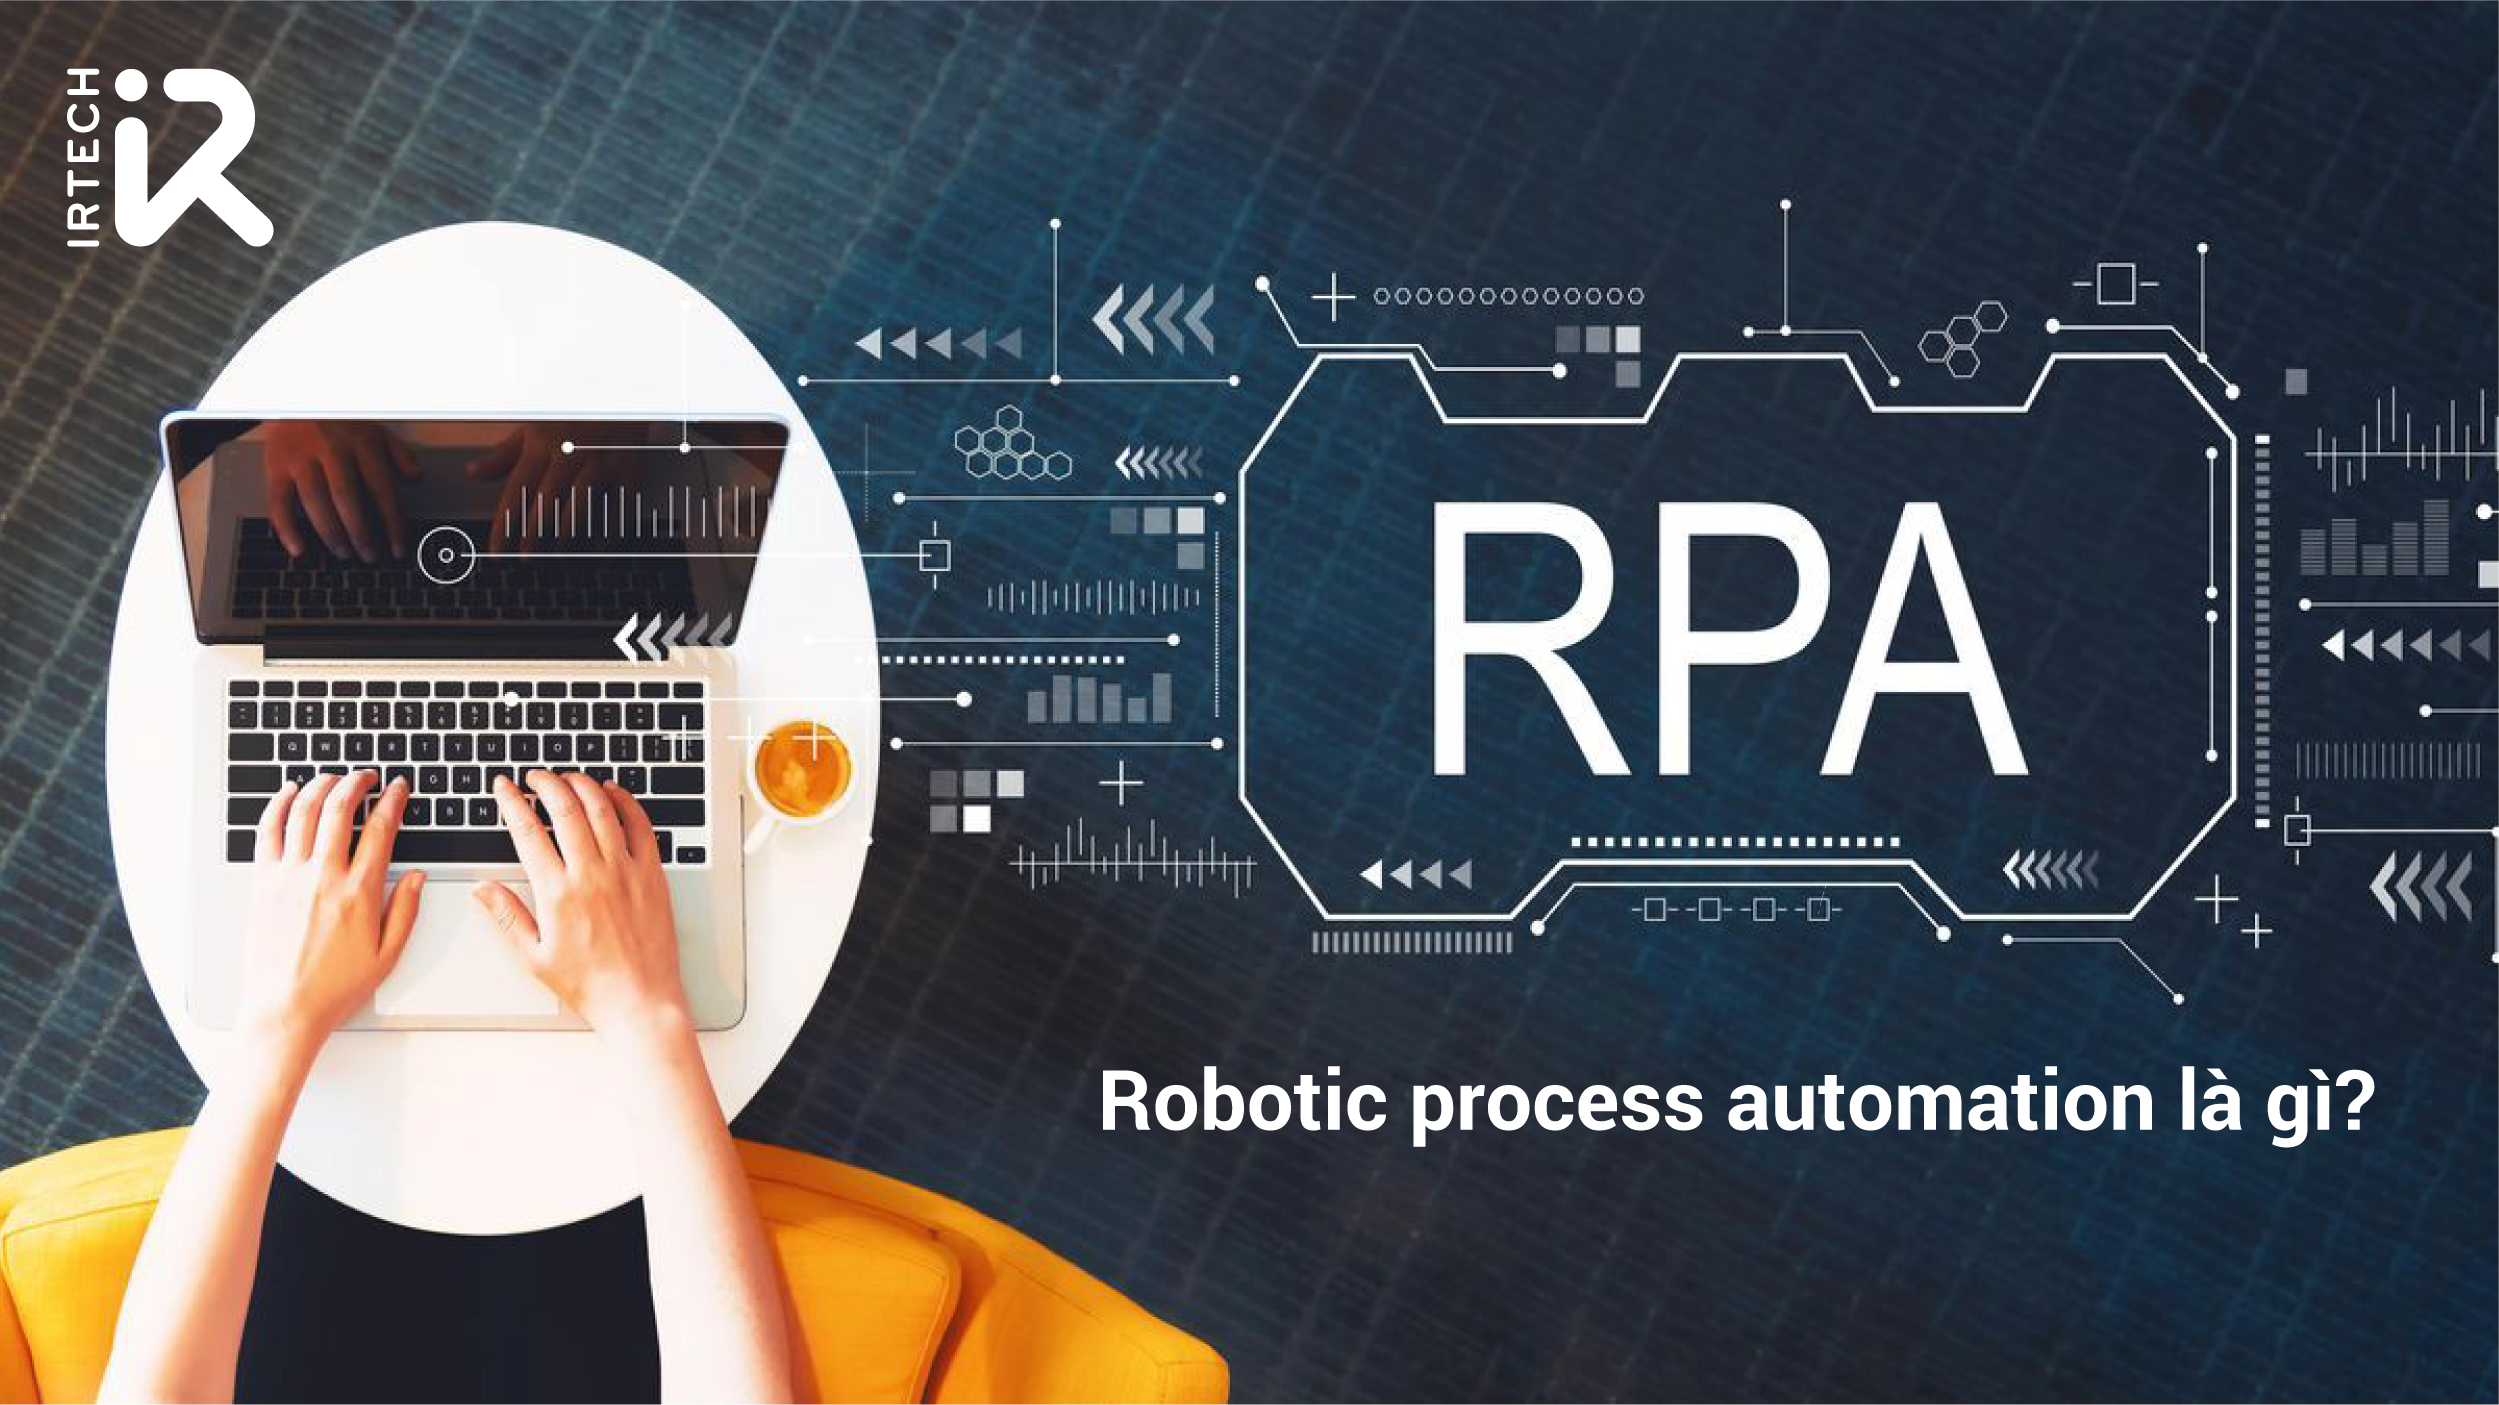 RPA (Robotic Process Automation): Bạn đang muốn sử dụng Công nghệ để nâng cao năng suất và giảm chi phí cho doanh nghiệp của mình? Đến với RPA - Công nghệ Robotic Process Automation sử dụng trí tuệ nhân tạo giúp cho các nhiệm vụ lặp lại được tự động hoá với tốc độ cao, giảm thiểu sai sót và đem lại hiệu quả cao nhất.